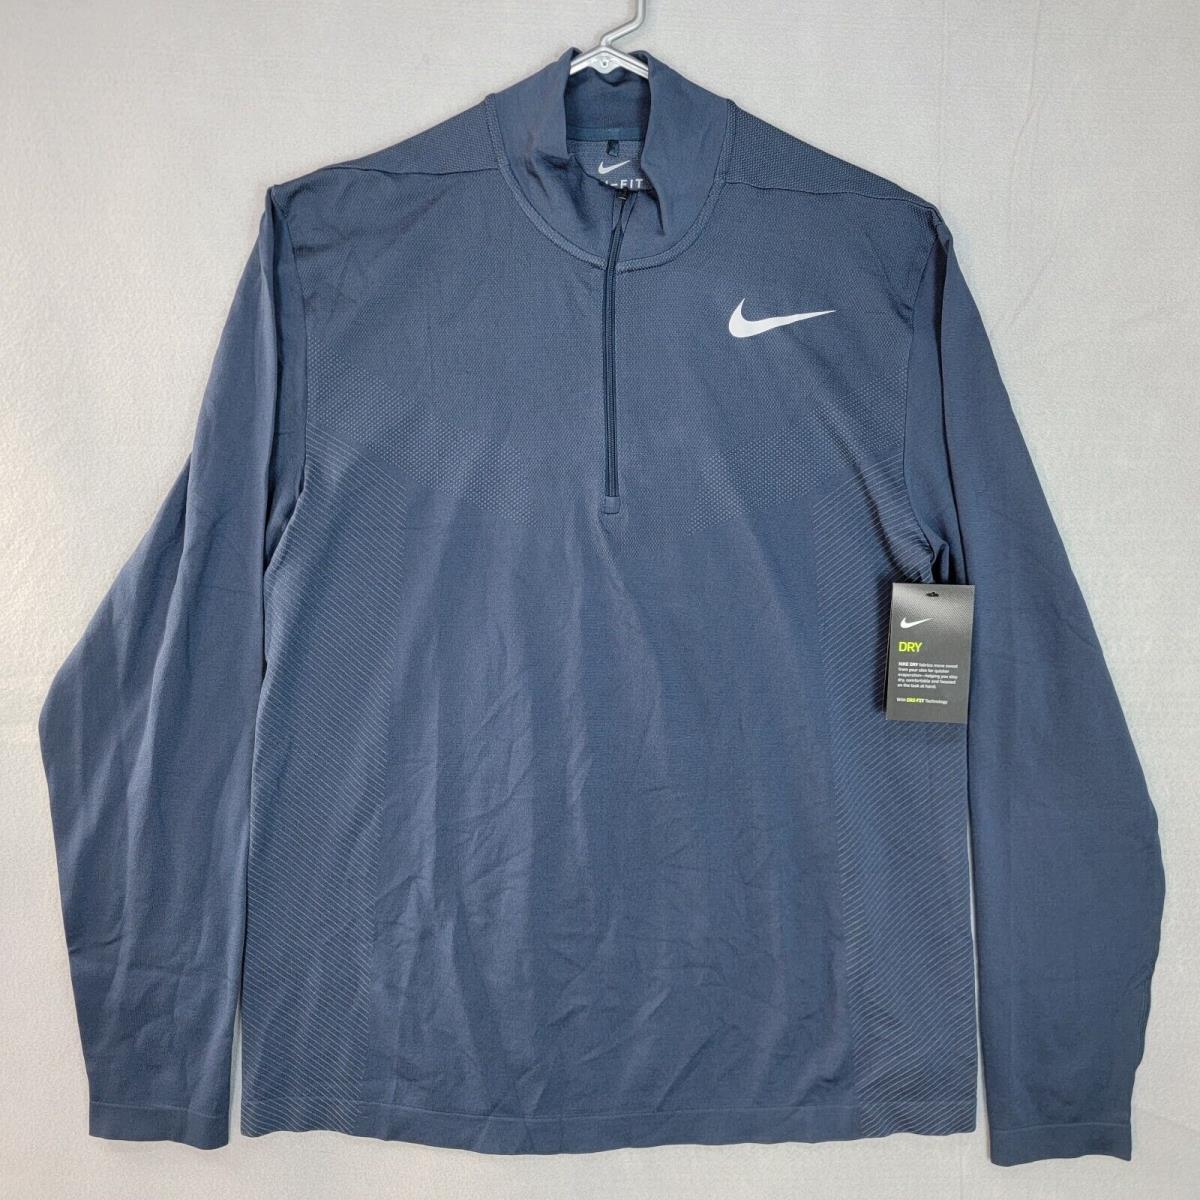 Nike Golf Dri-fit Longsleeve 1/4 Zip Pullover Shirt Blue Mens Large